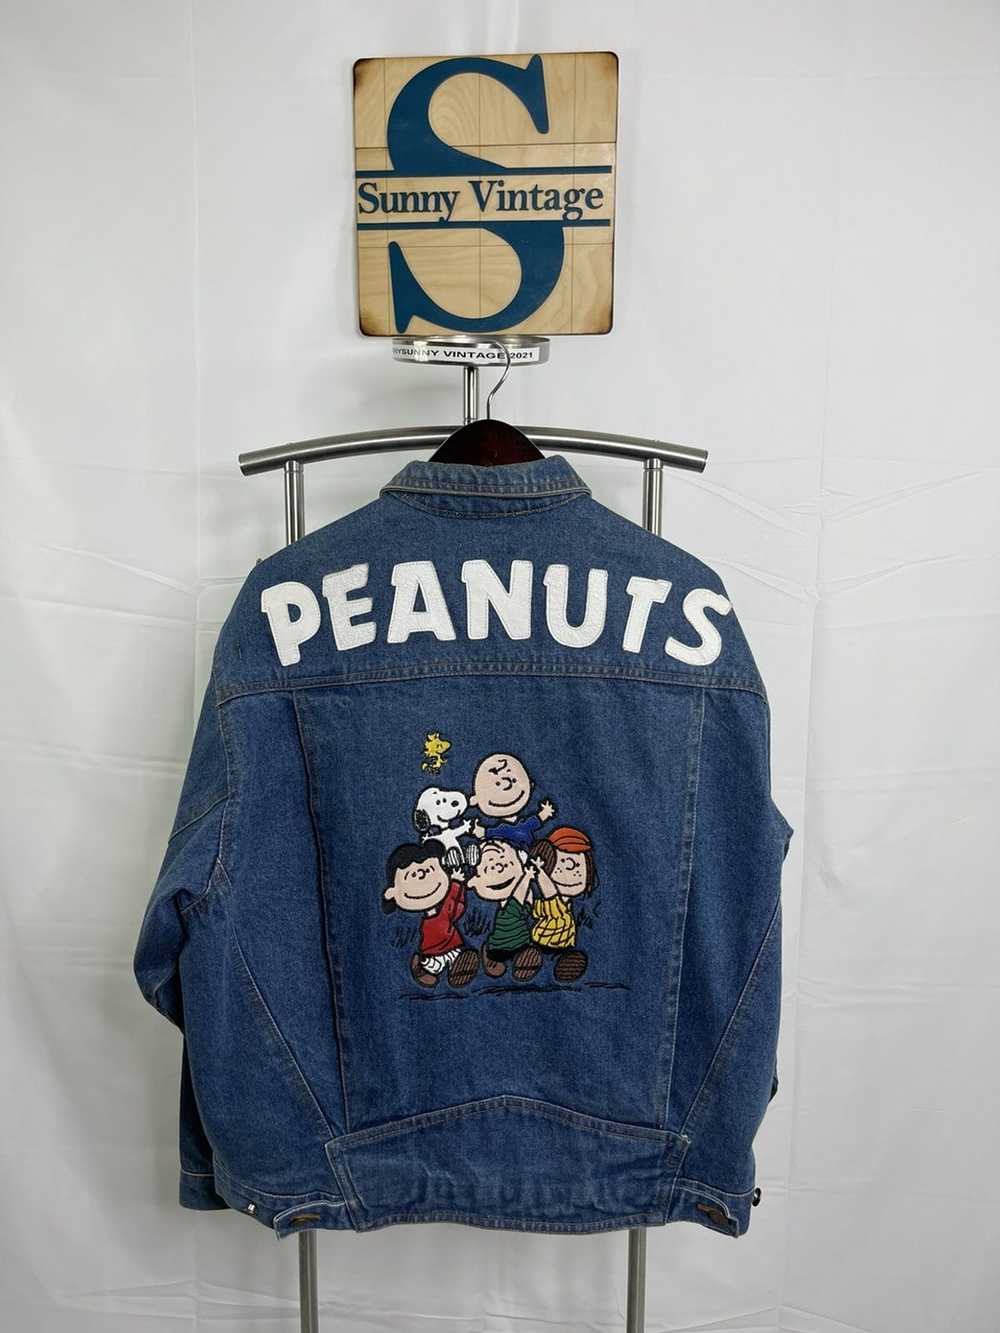 Peanuts × Vintage Peanuts American toon - image 8